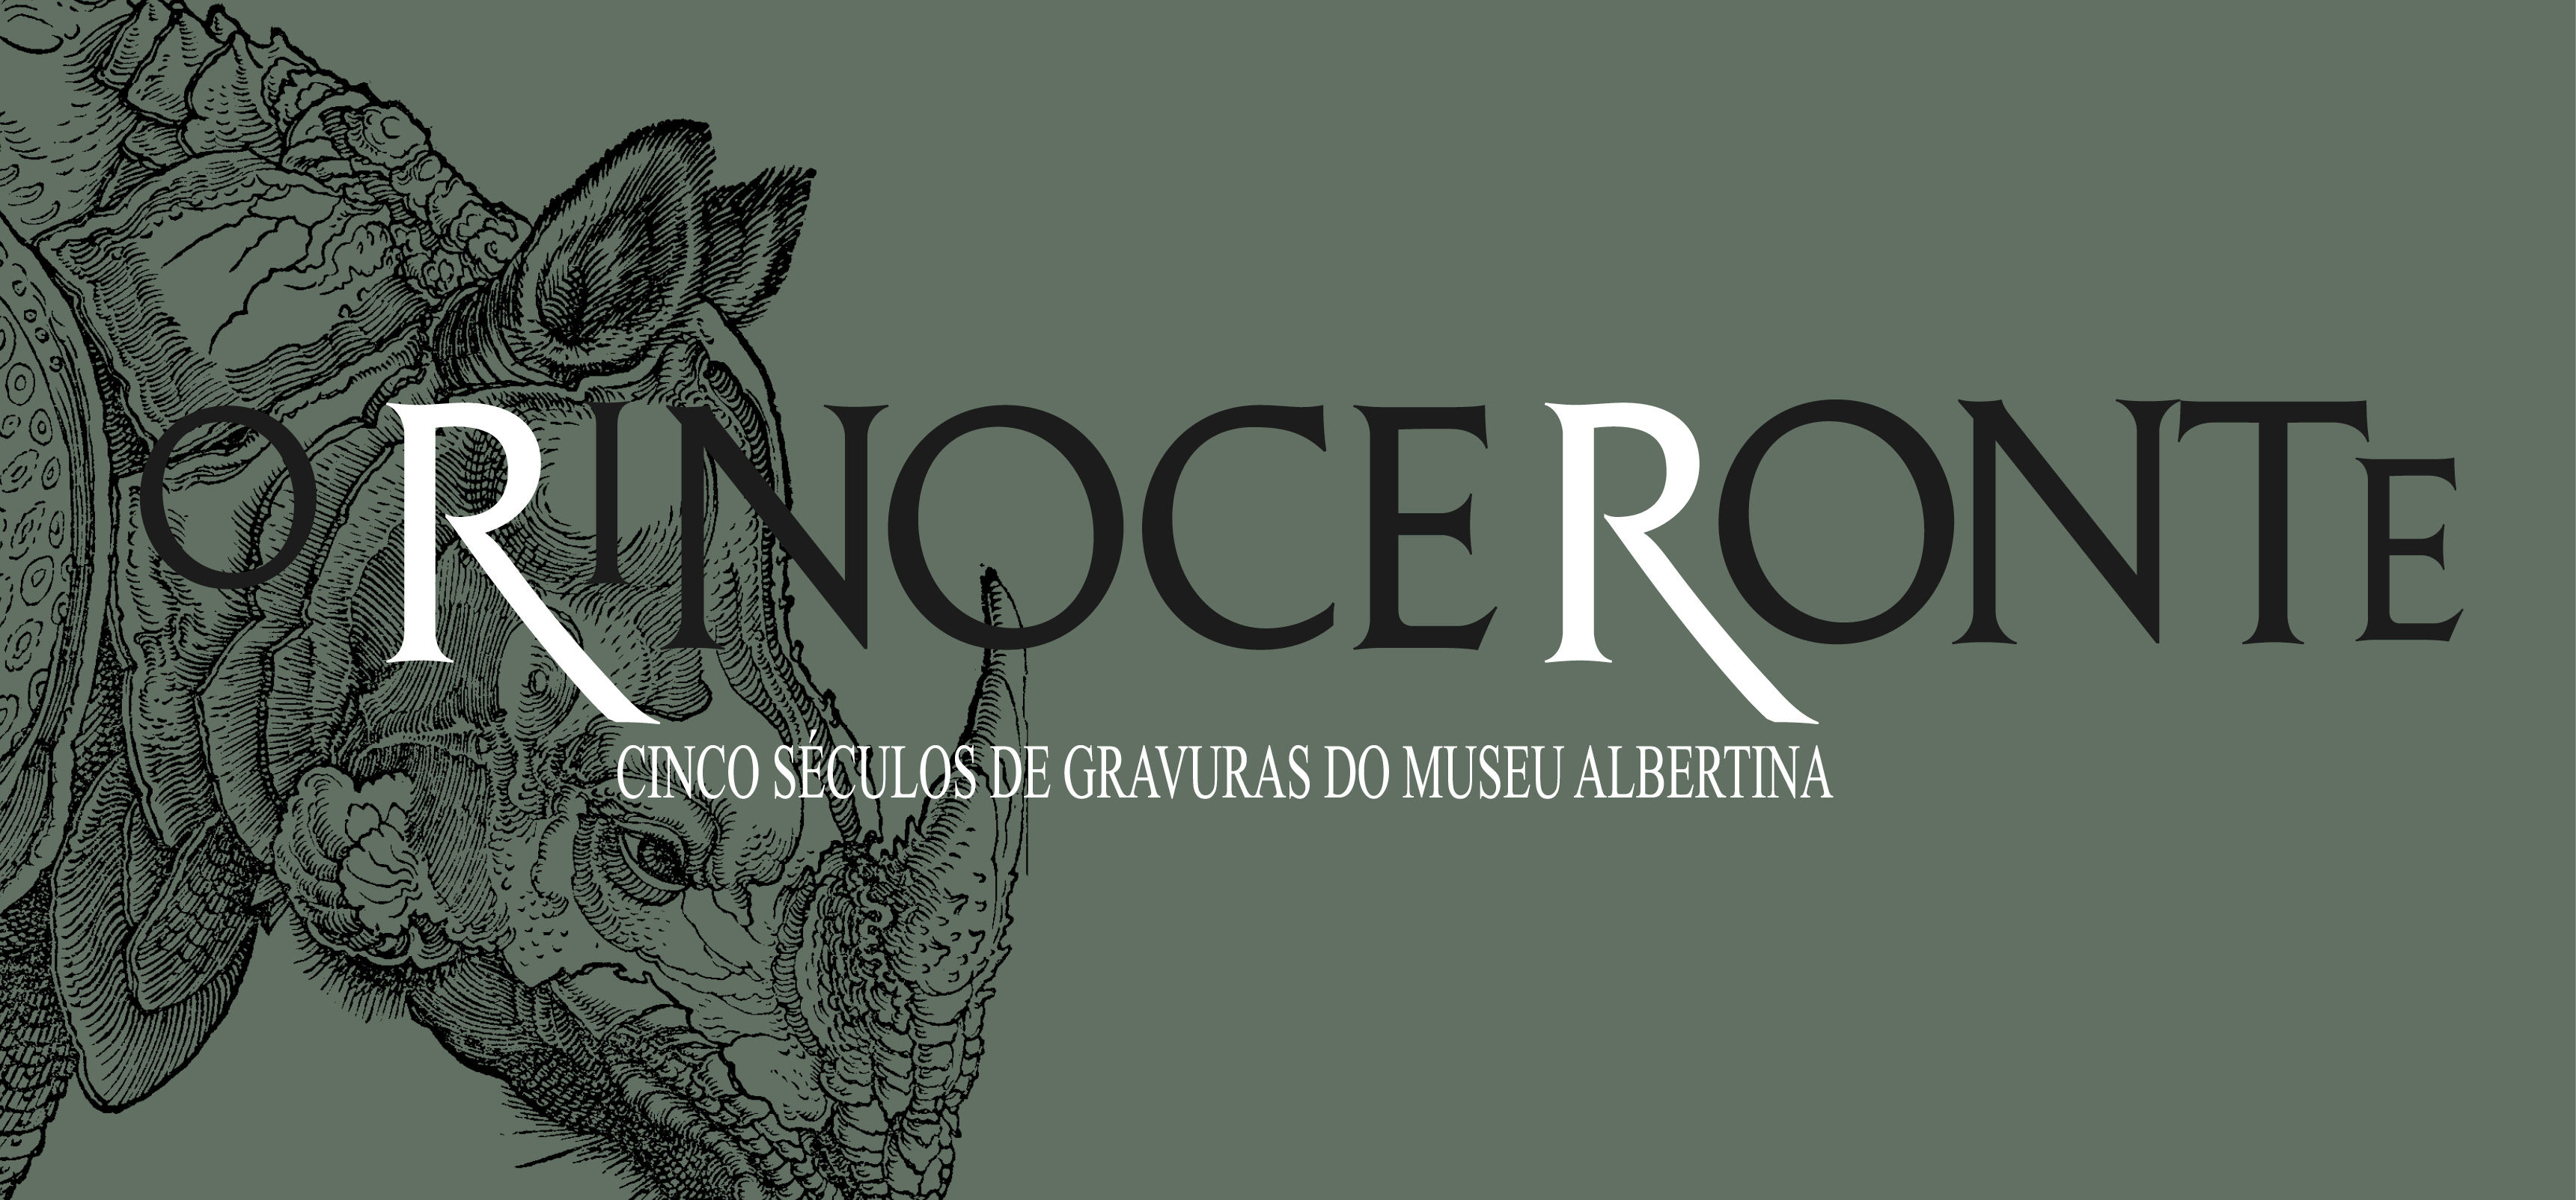 O RINOCERONTE: 5 SÉCULOS DE GRAVURAS DO MUSEU ALBERTINA